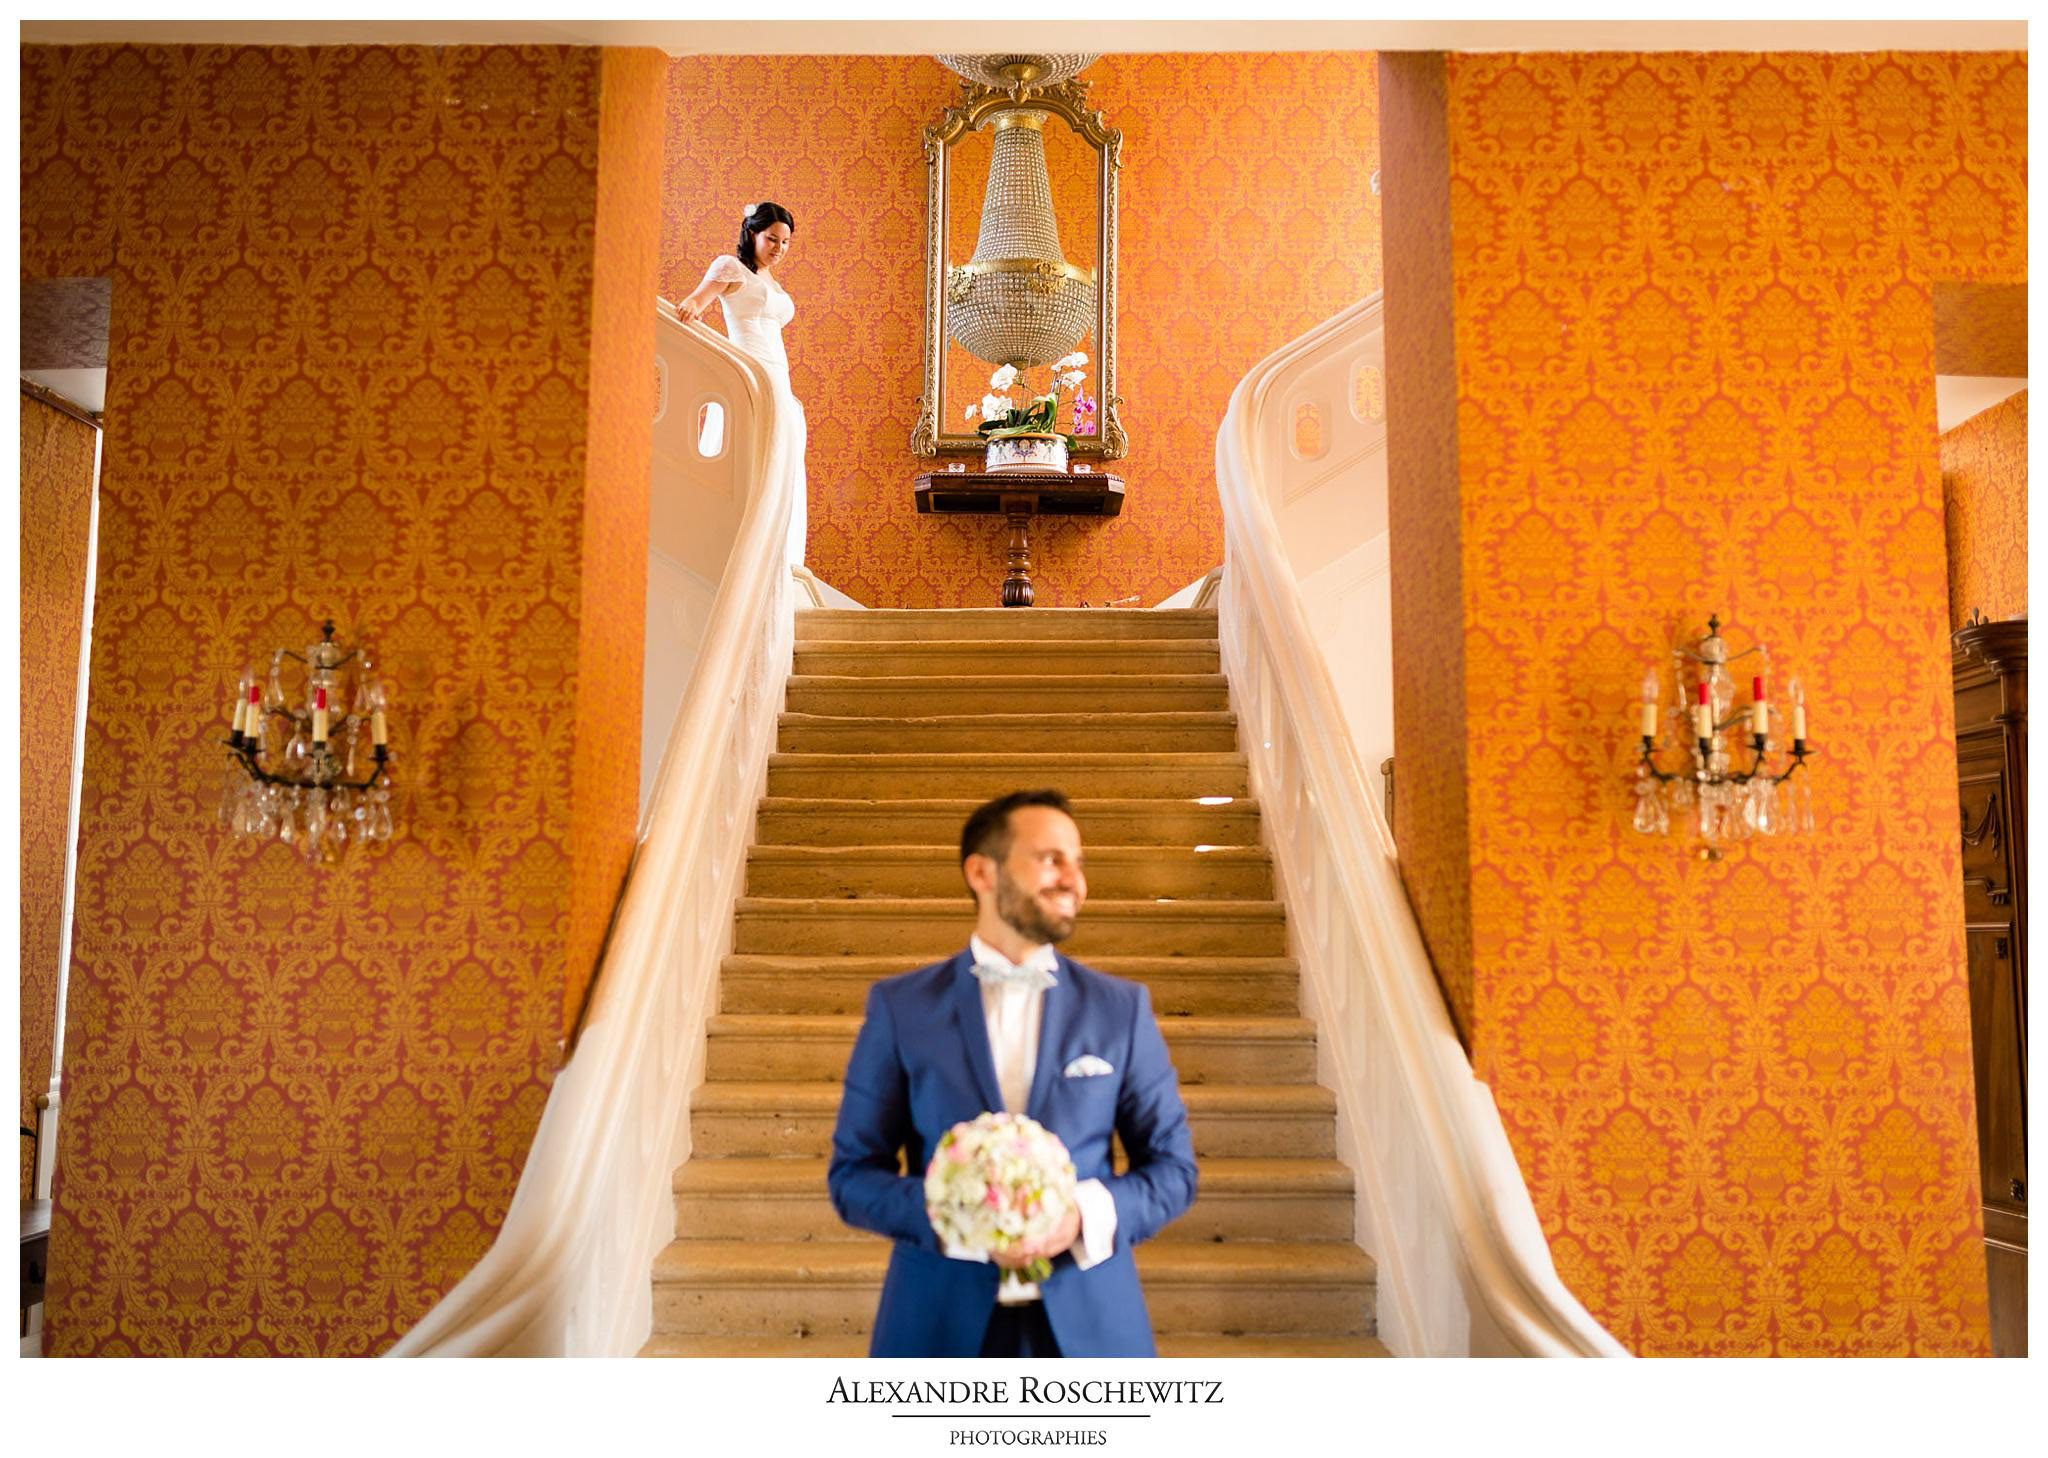 Le best-of des mariages et séances photos de l'année 2016. Alexandre Roschewitz Photographies